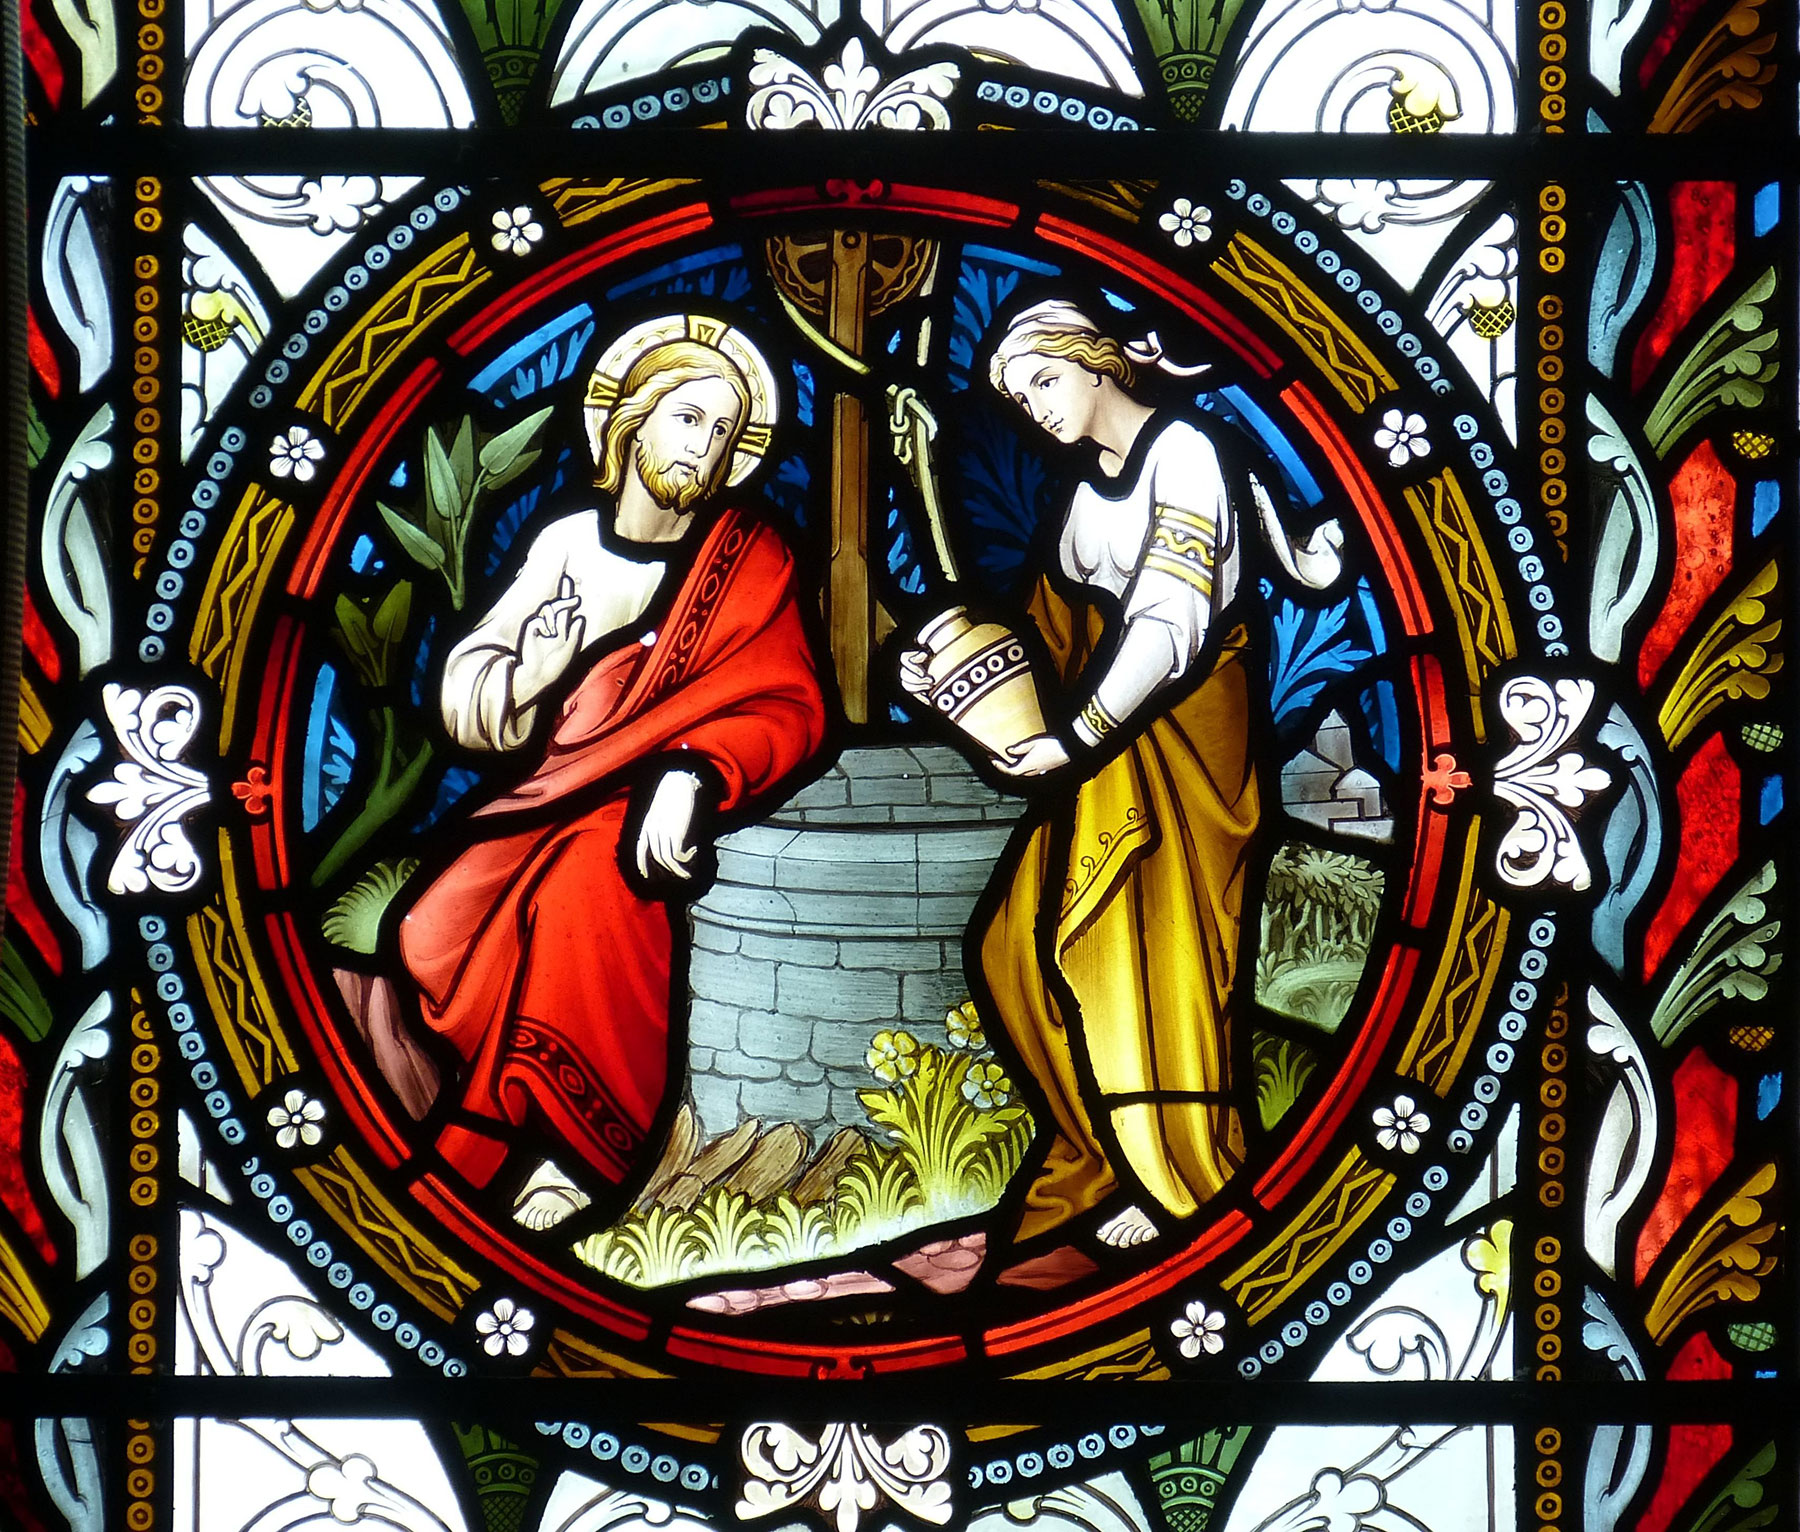 Kirchenfensterausschnitt: Die Frau am Jakobsbrunnen mit Jesus im Gespräch über das wahre Wasser, das er den Menschen bringt (Foto: falco, pixabay)